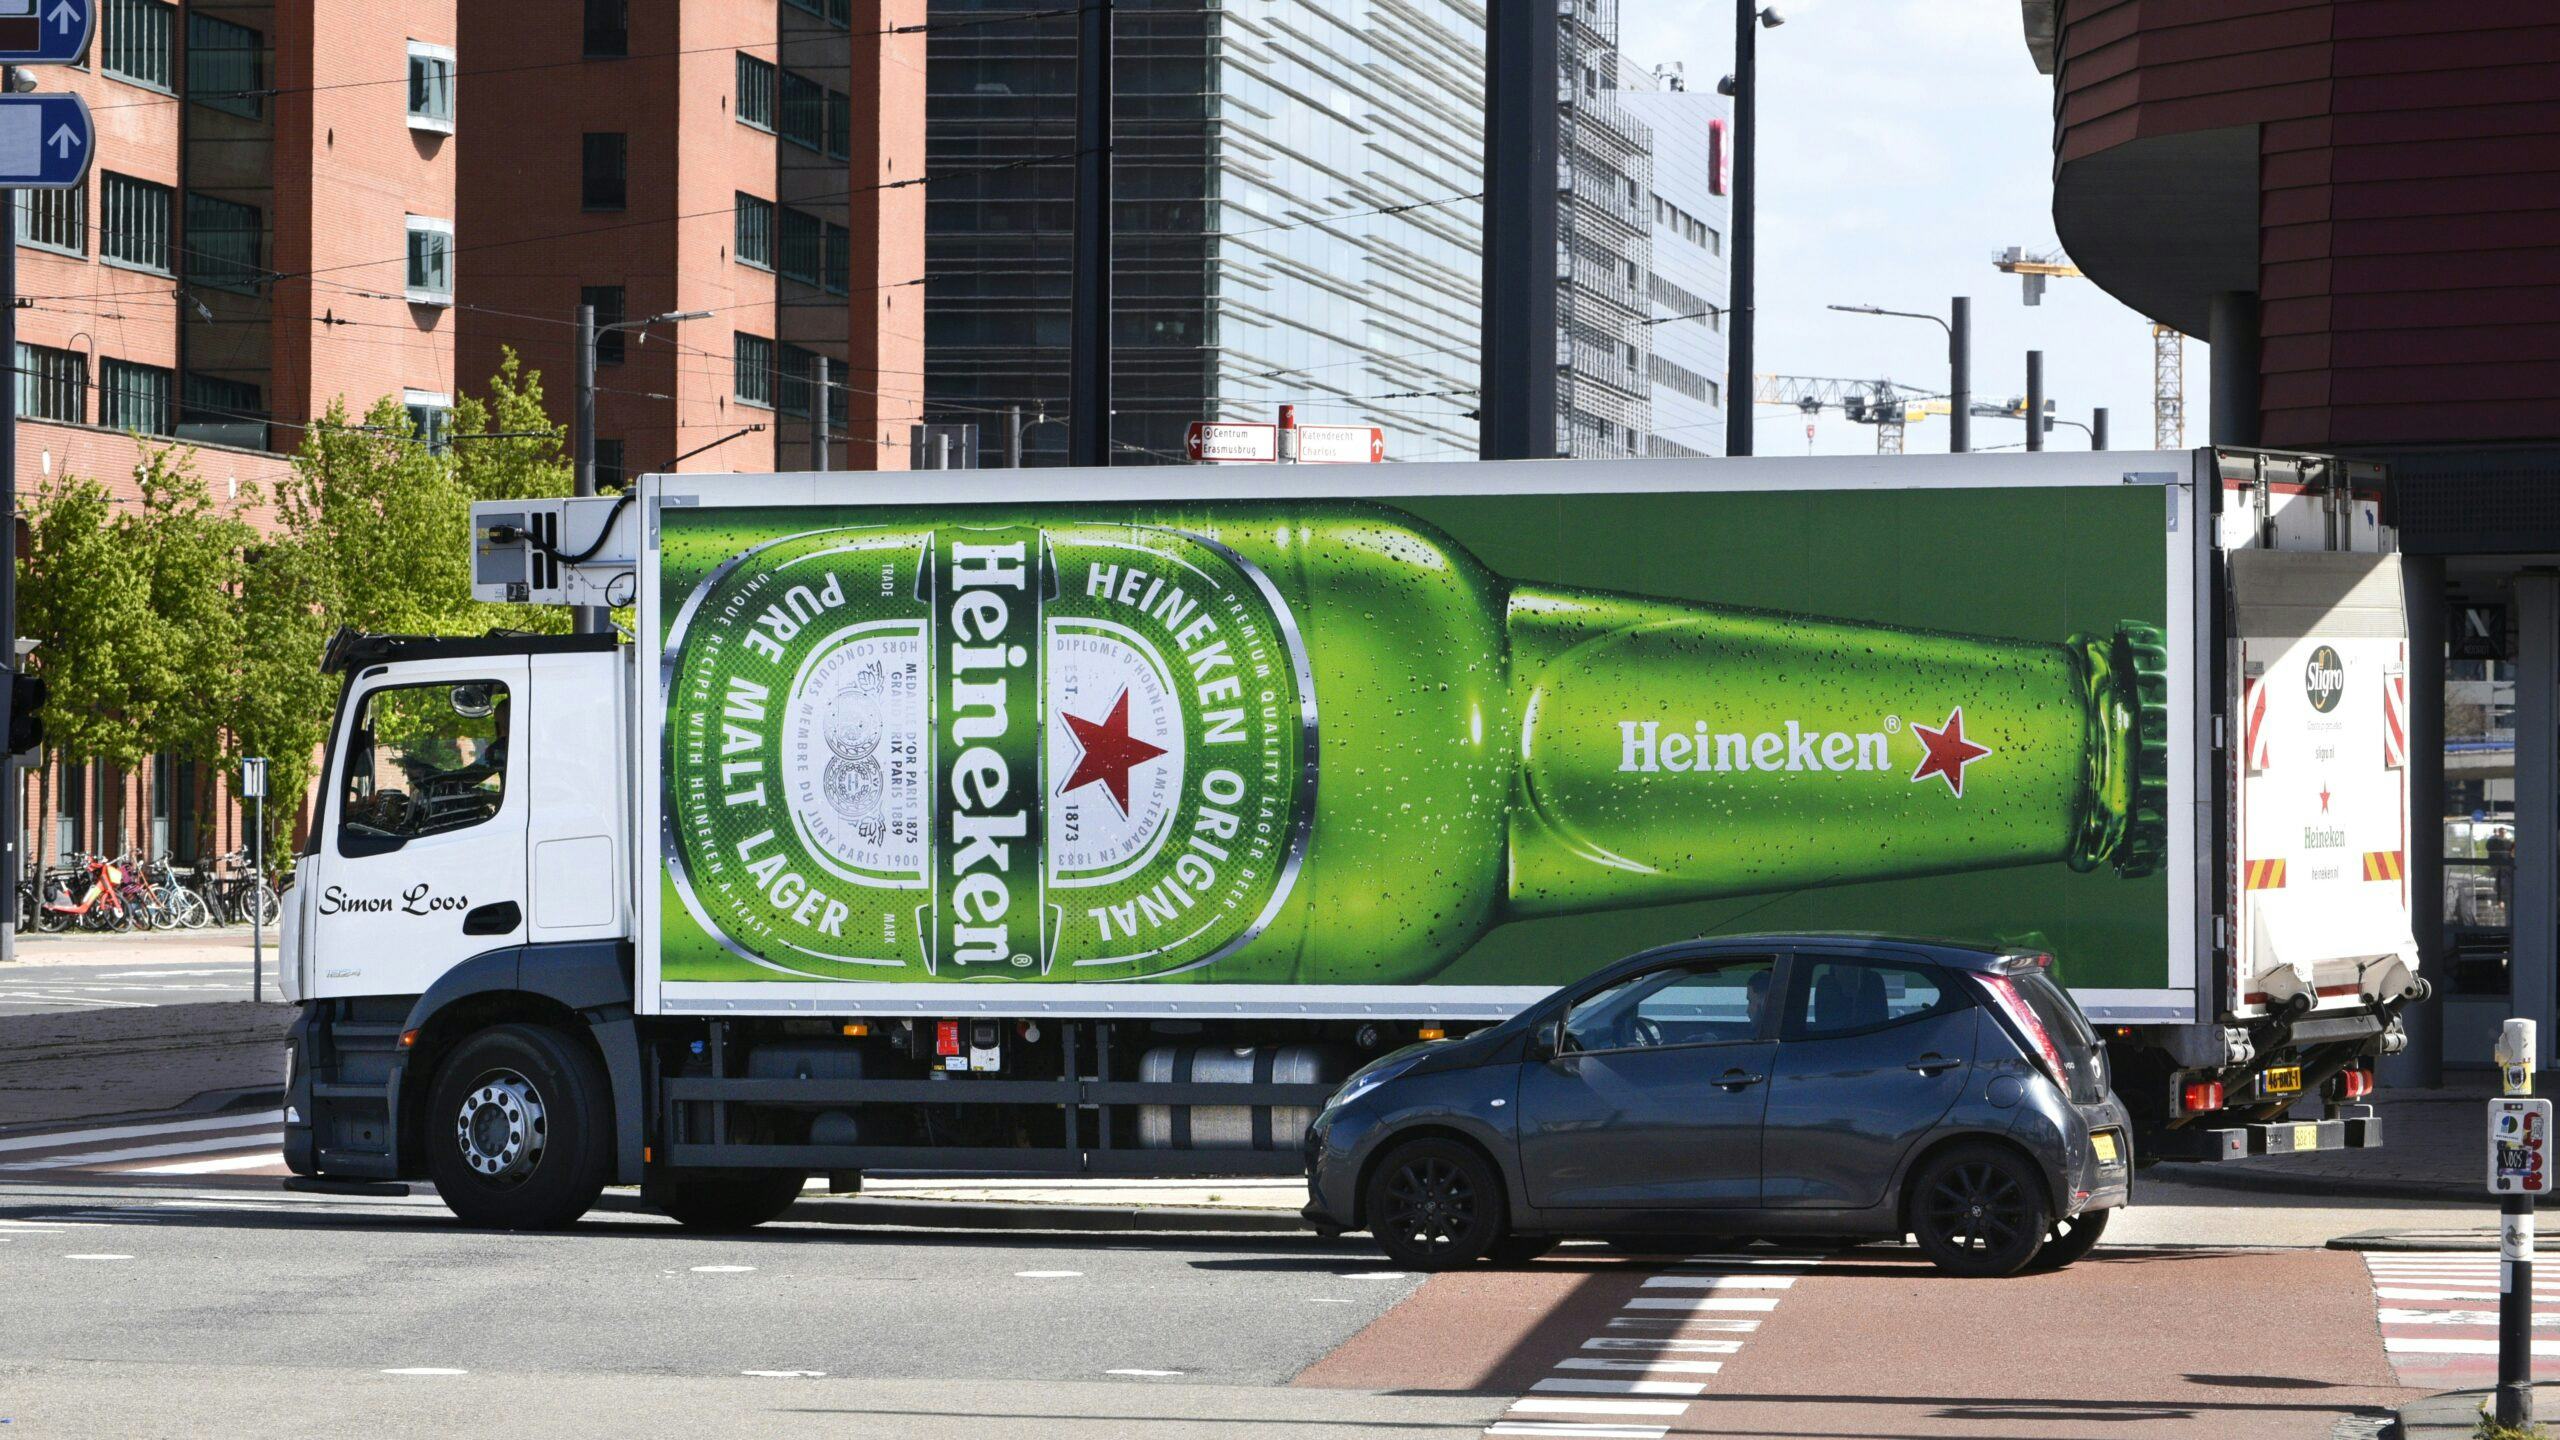 Simon Loos rijdt in opdracht van Sligro voor Heineken. FOTO: ANP-HH / Peter Hilz